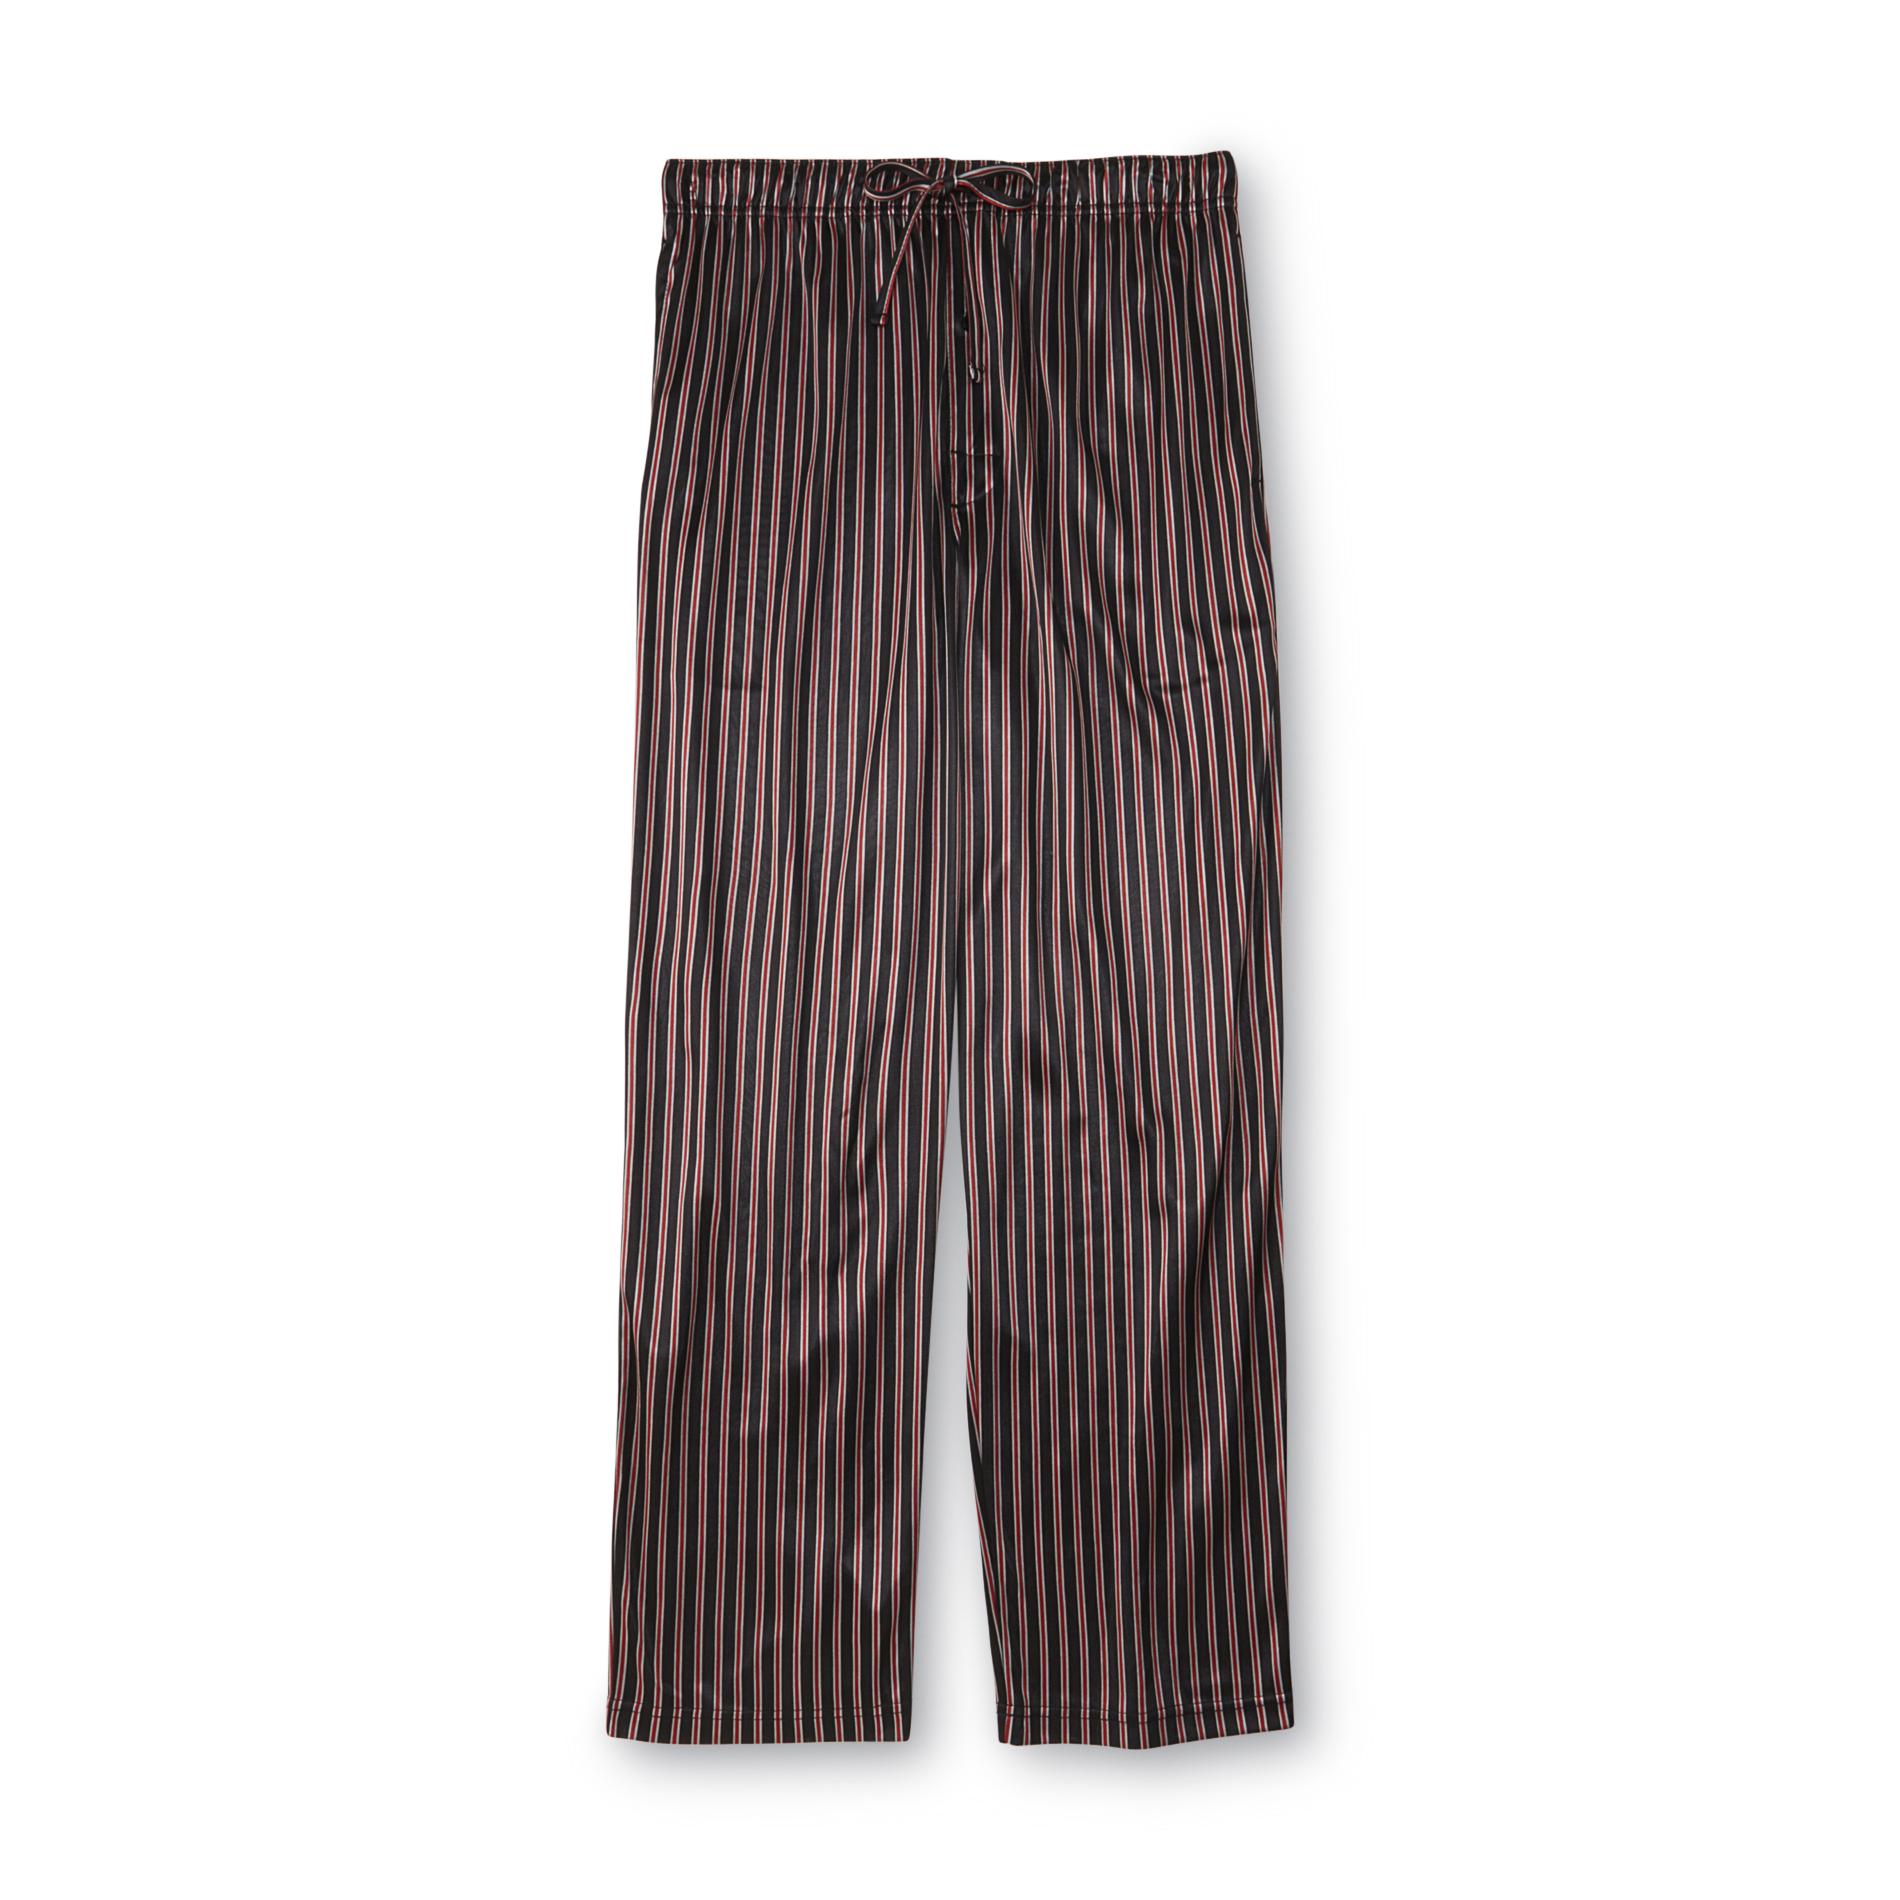 Joe Boxer Men's Pajama Pants - Striped